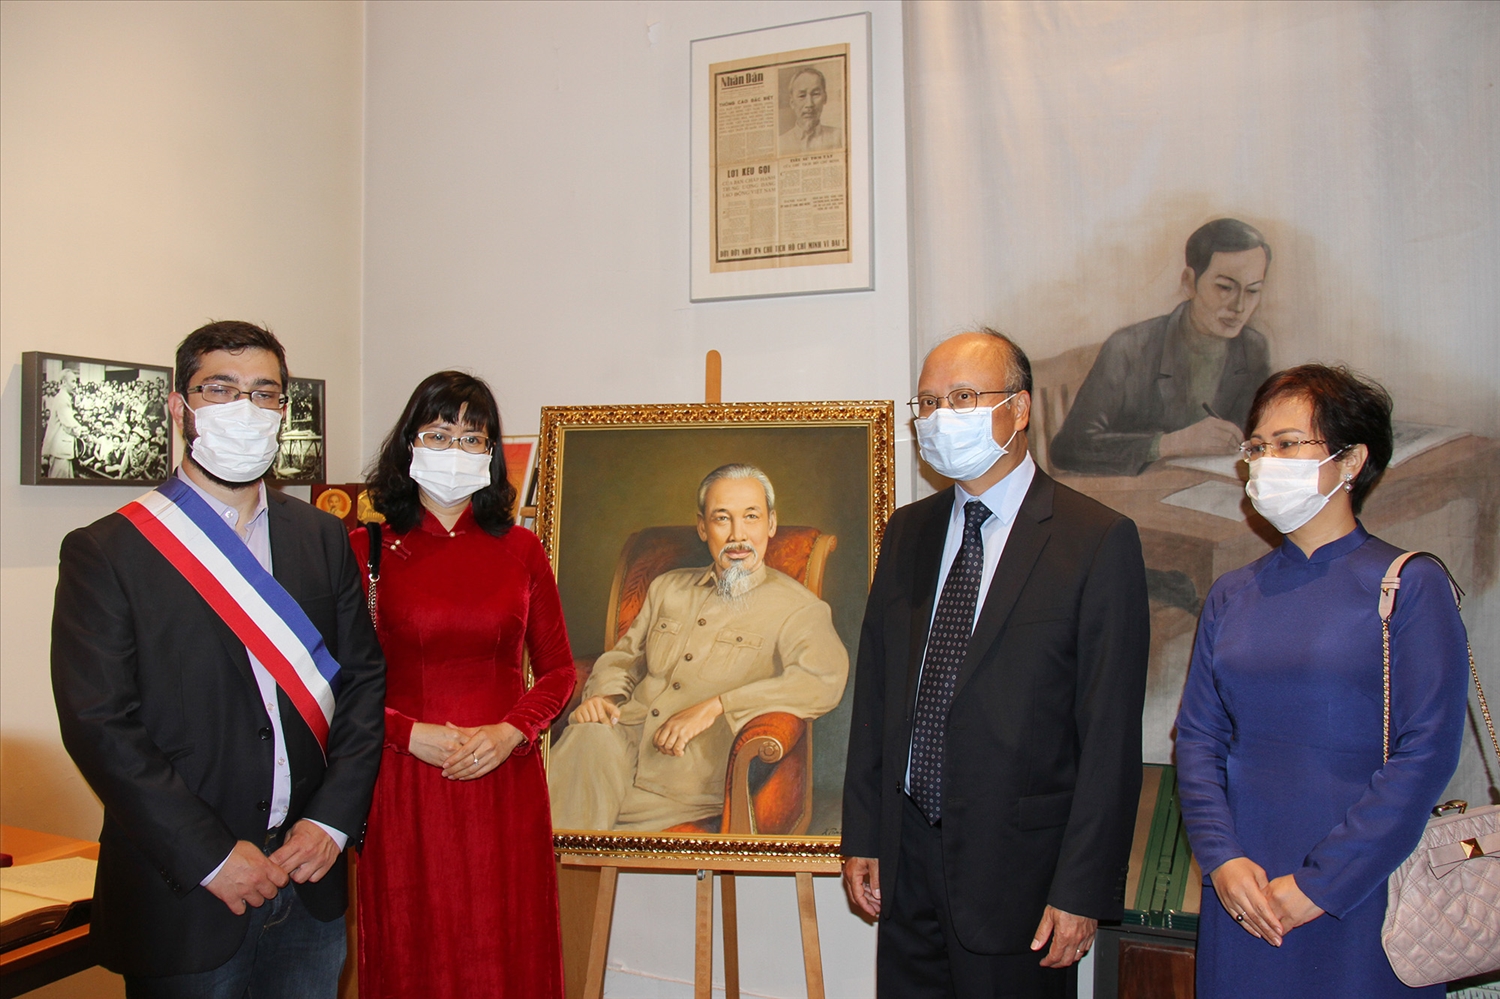  Đại sứ Đinh Toàn Thắng và Phu nhân, Đại sứ Lê Thị Hồng Vân và Phó Thị trưởng Floran Vigneron thăm Không gian Hồ Chí Minh trong Bảo tàng Lịch sử sống. 